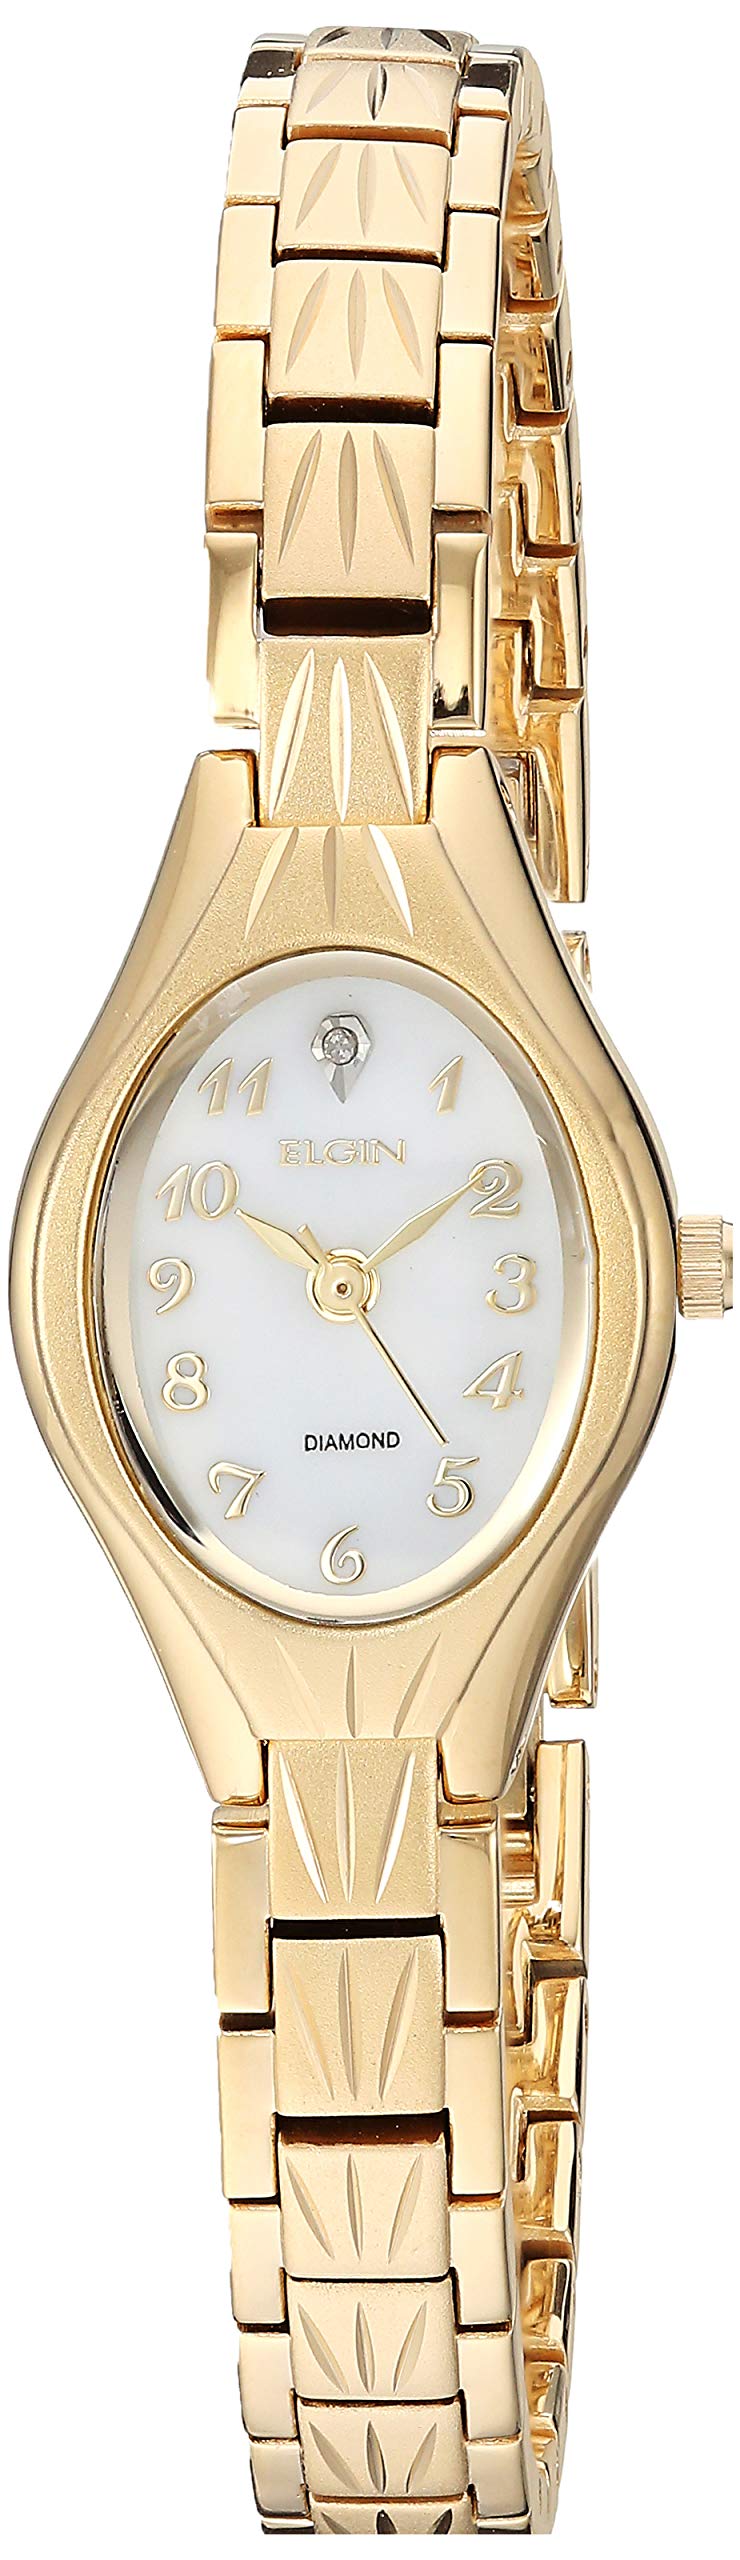 Accutime Elgin Women's EG9759 Analog Display Analog Quartz Gold Watch